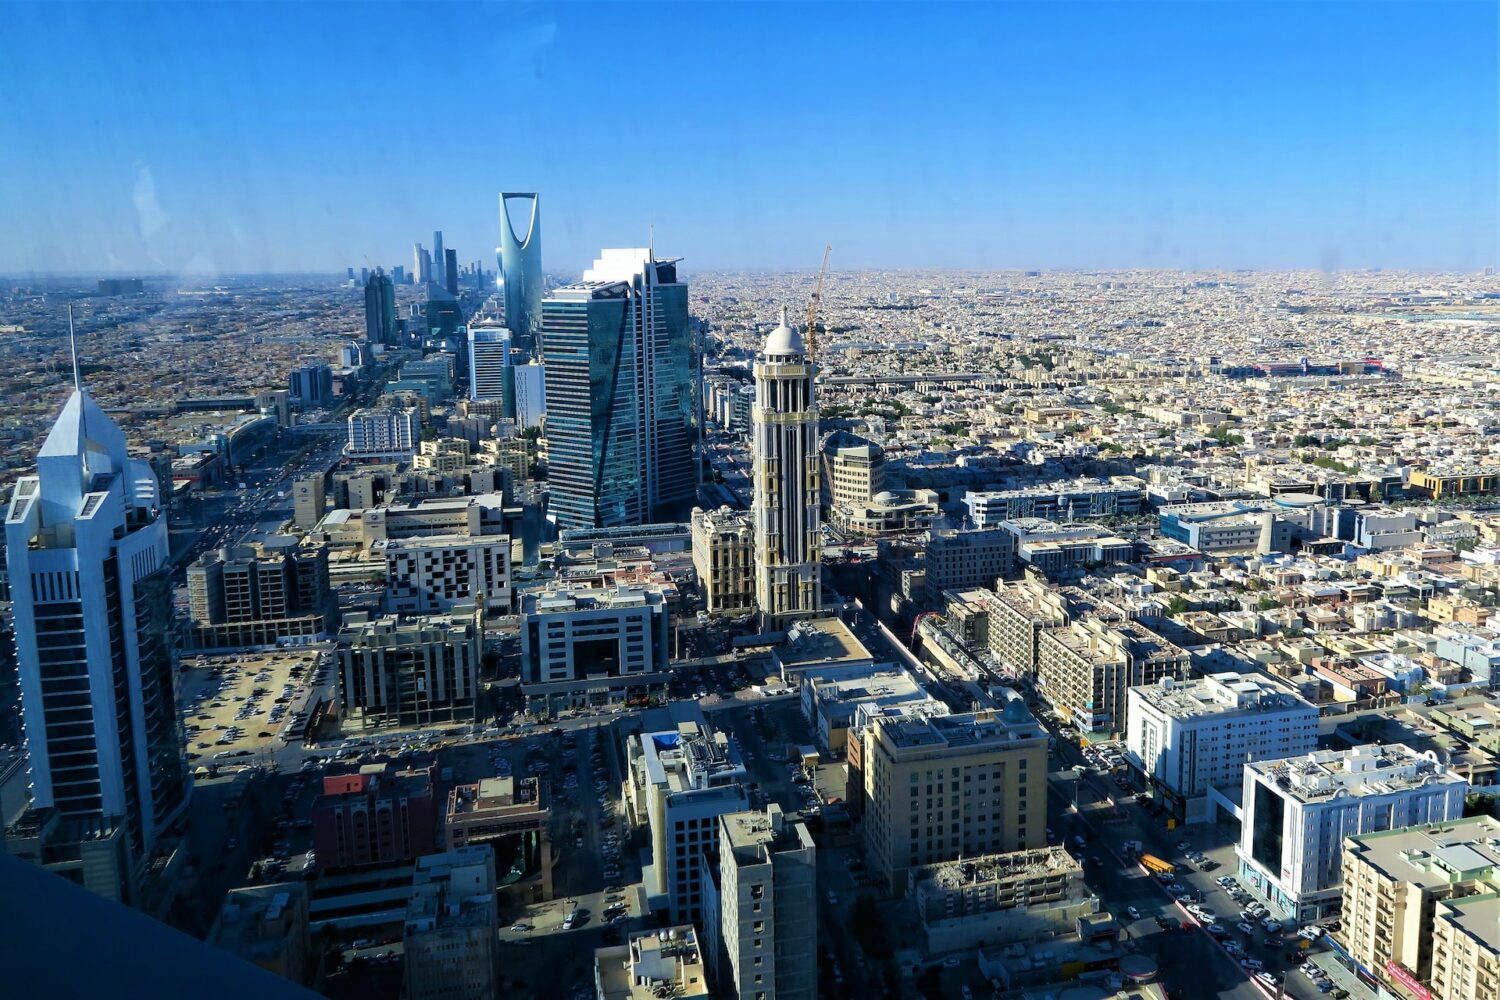 Foto da capital da Arábia Saudita vista de cima para ilustrar o post de seguro viagem Arábia Saudita. Riad é repleta de prédios altos e muitas casas são vistas do lado direito da imagem.- Foto: Ekrem Osmanoglu